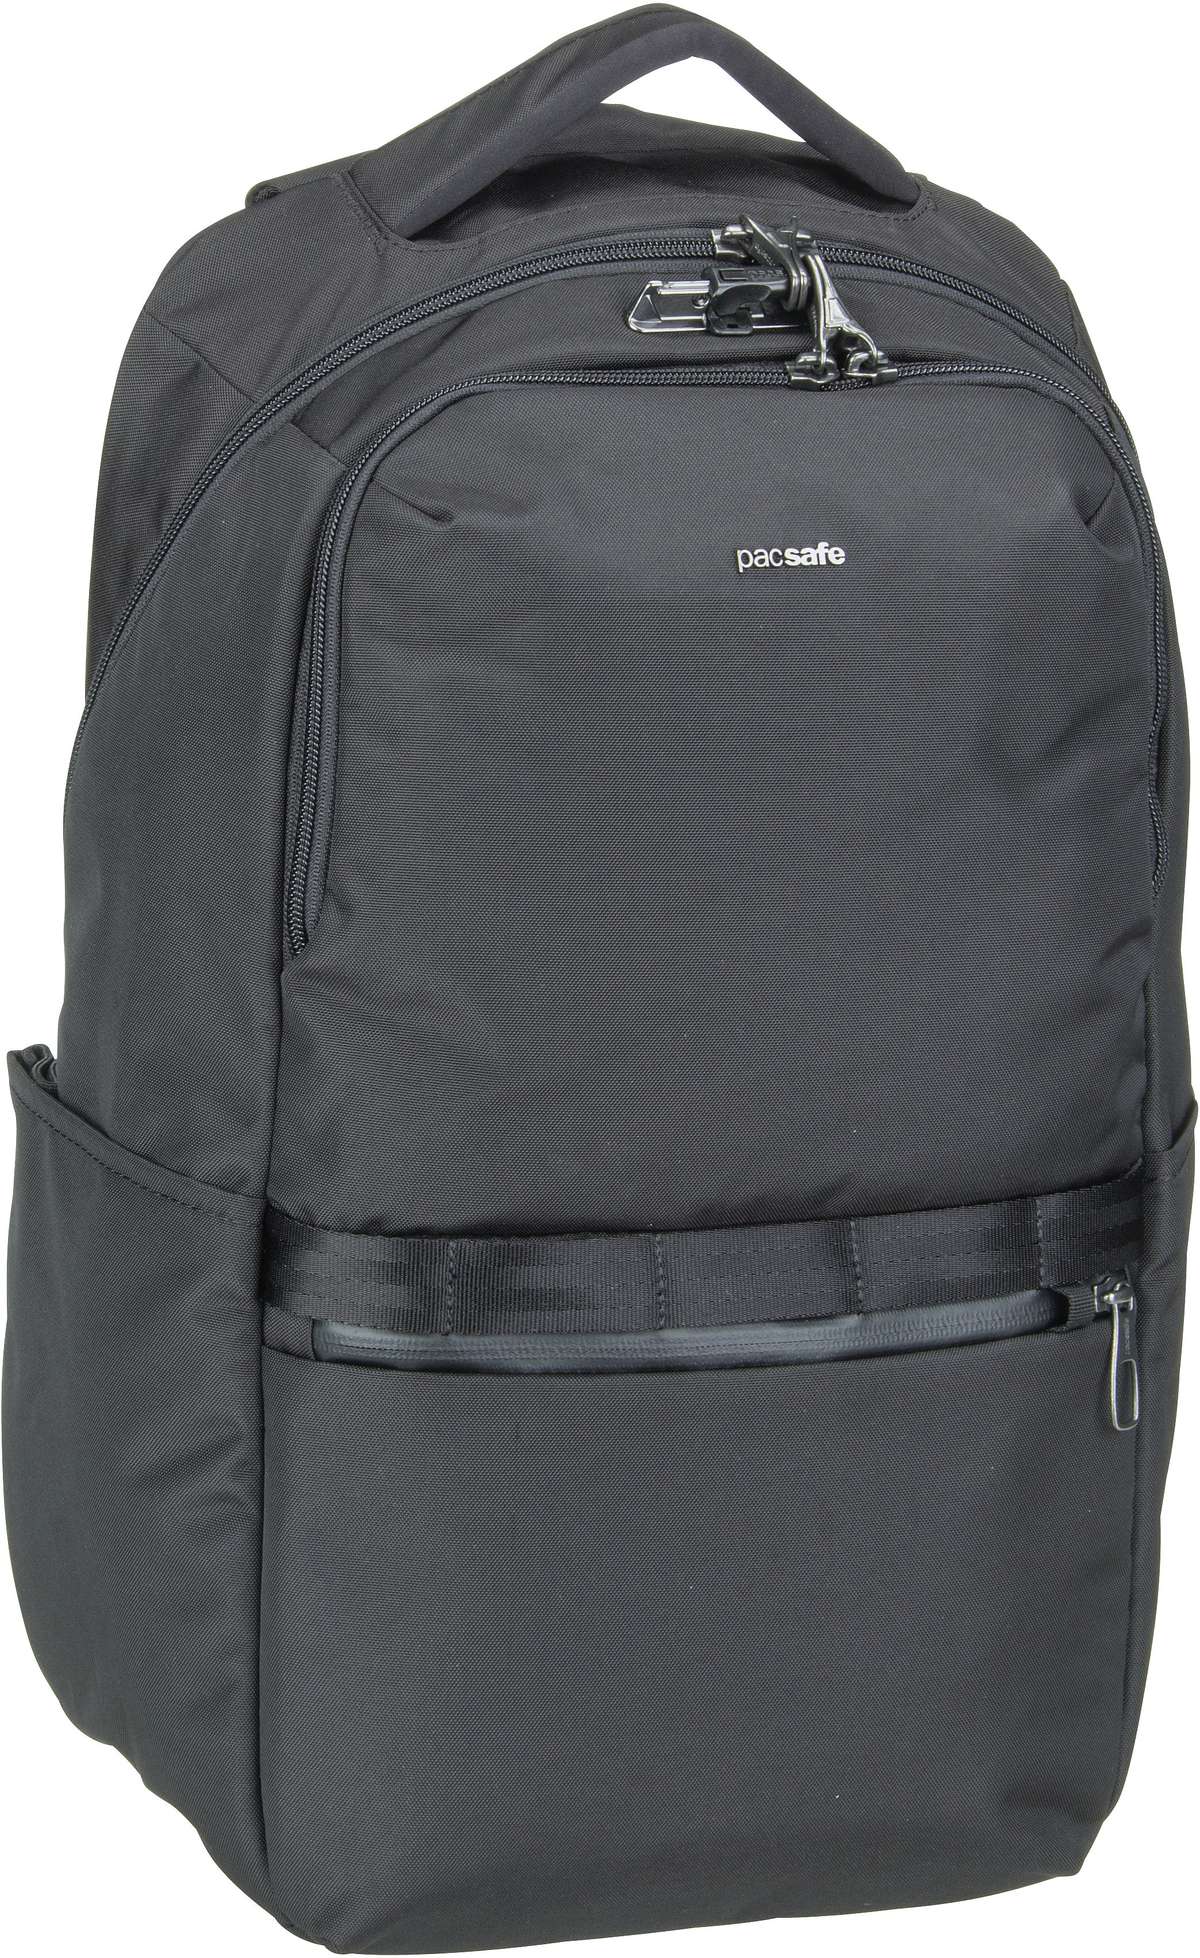 Pacsafe Metrosafe X 25L Backpack - Black